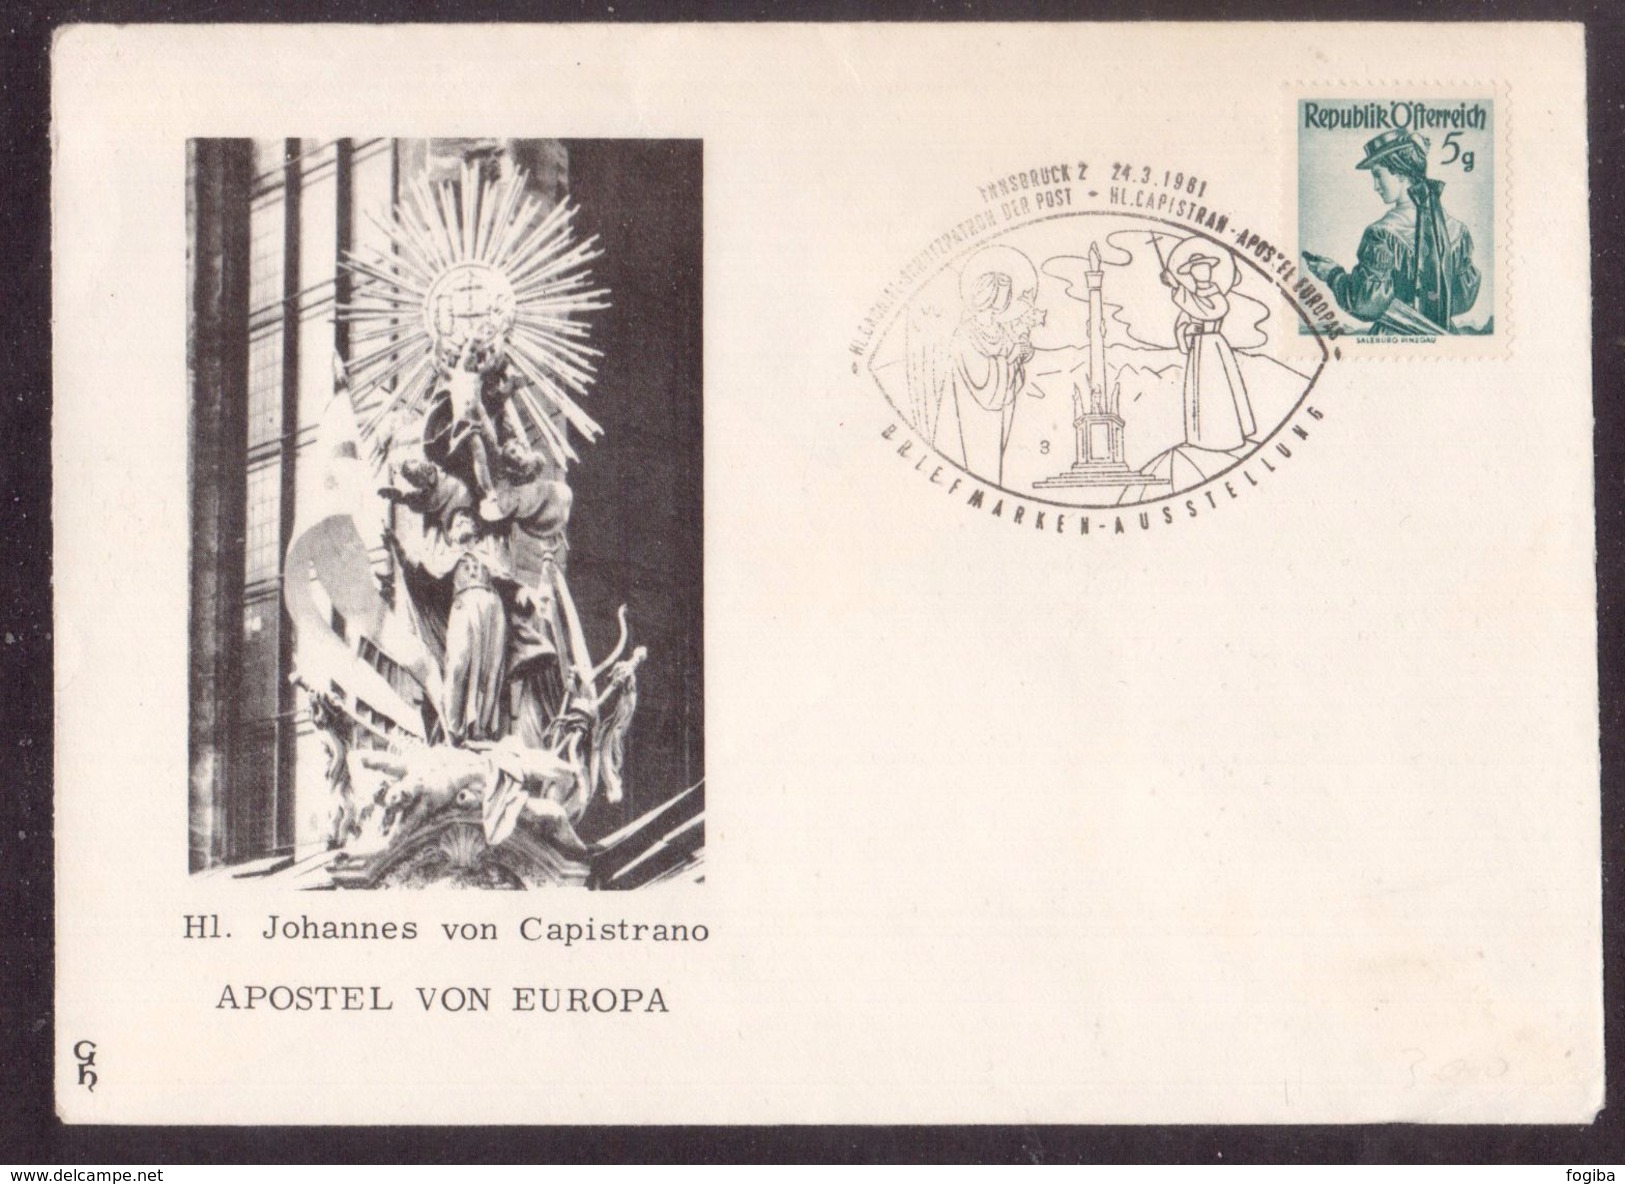 JZ239   Austria, Innsbruck 1961, Hl. Johannes Von Capistrano Apostel Von Europa - Special Cover And Postmark - Christentum